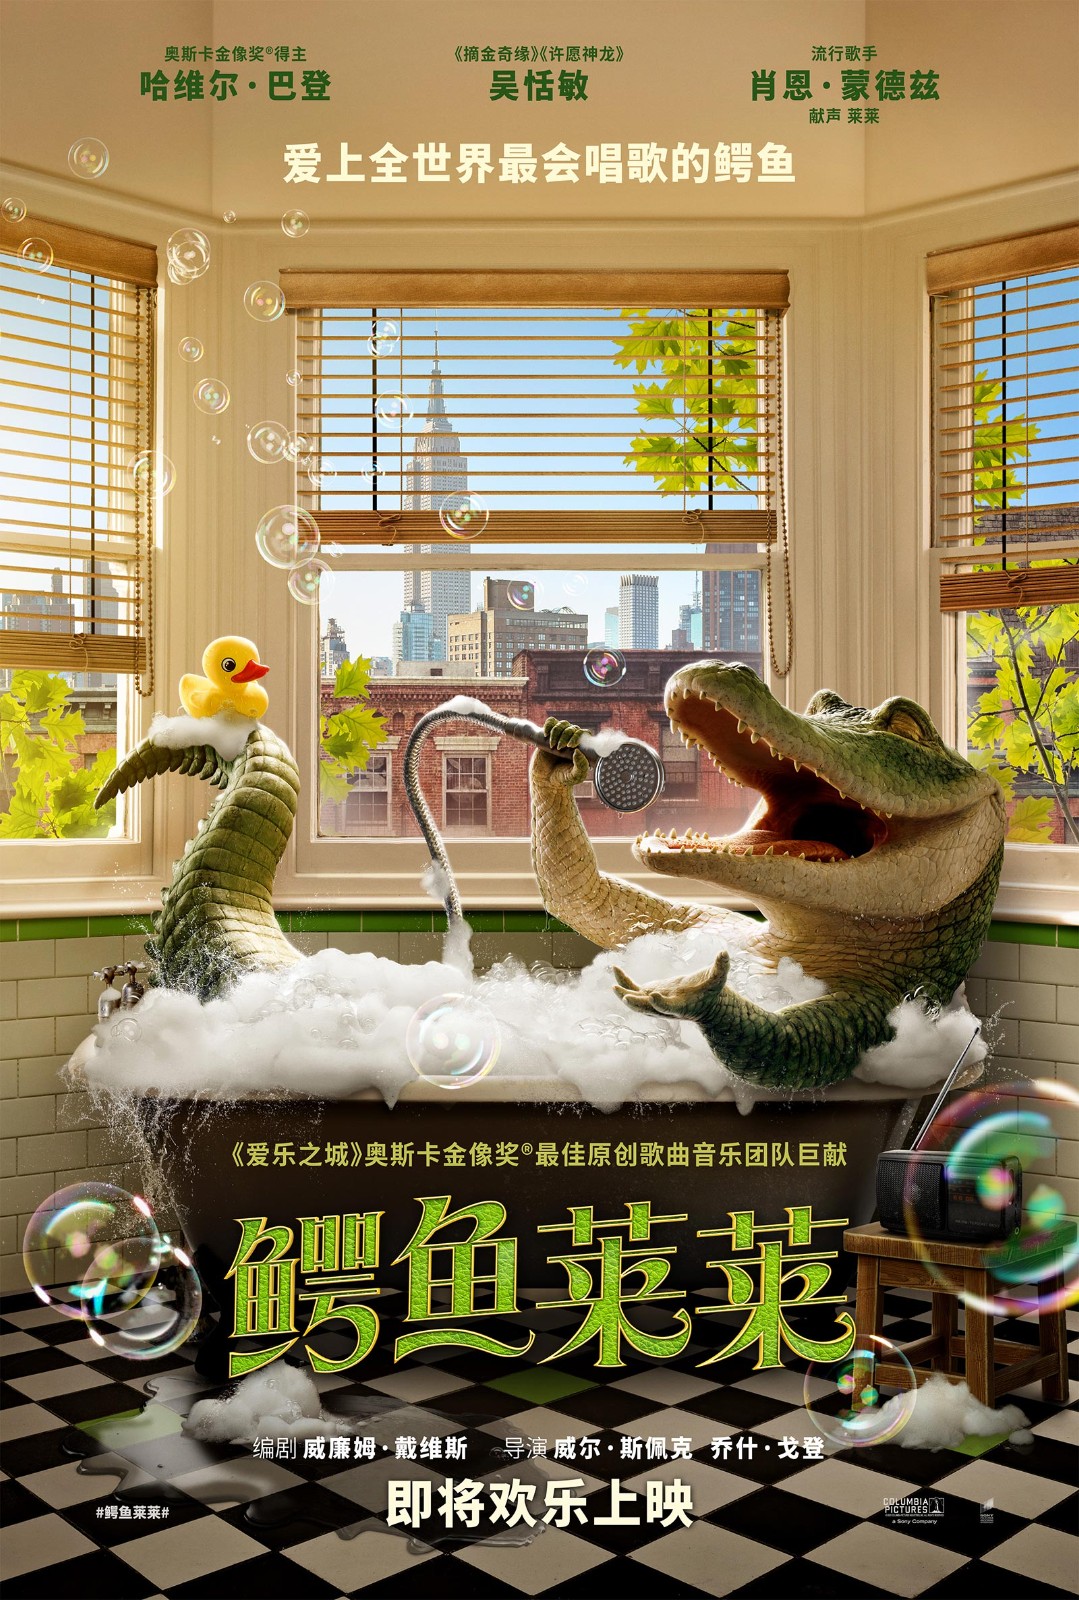 电影《鳄鱼莱莱》即将上映 全世界最会唱歌的鳄鱼欢乐开麦